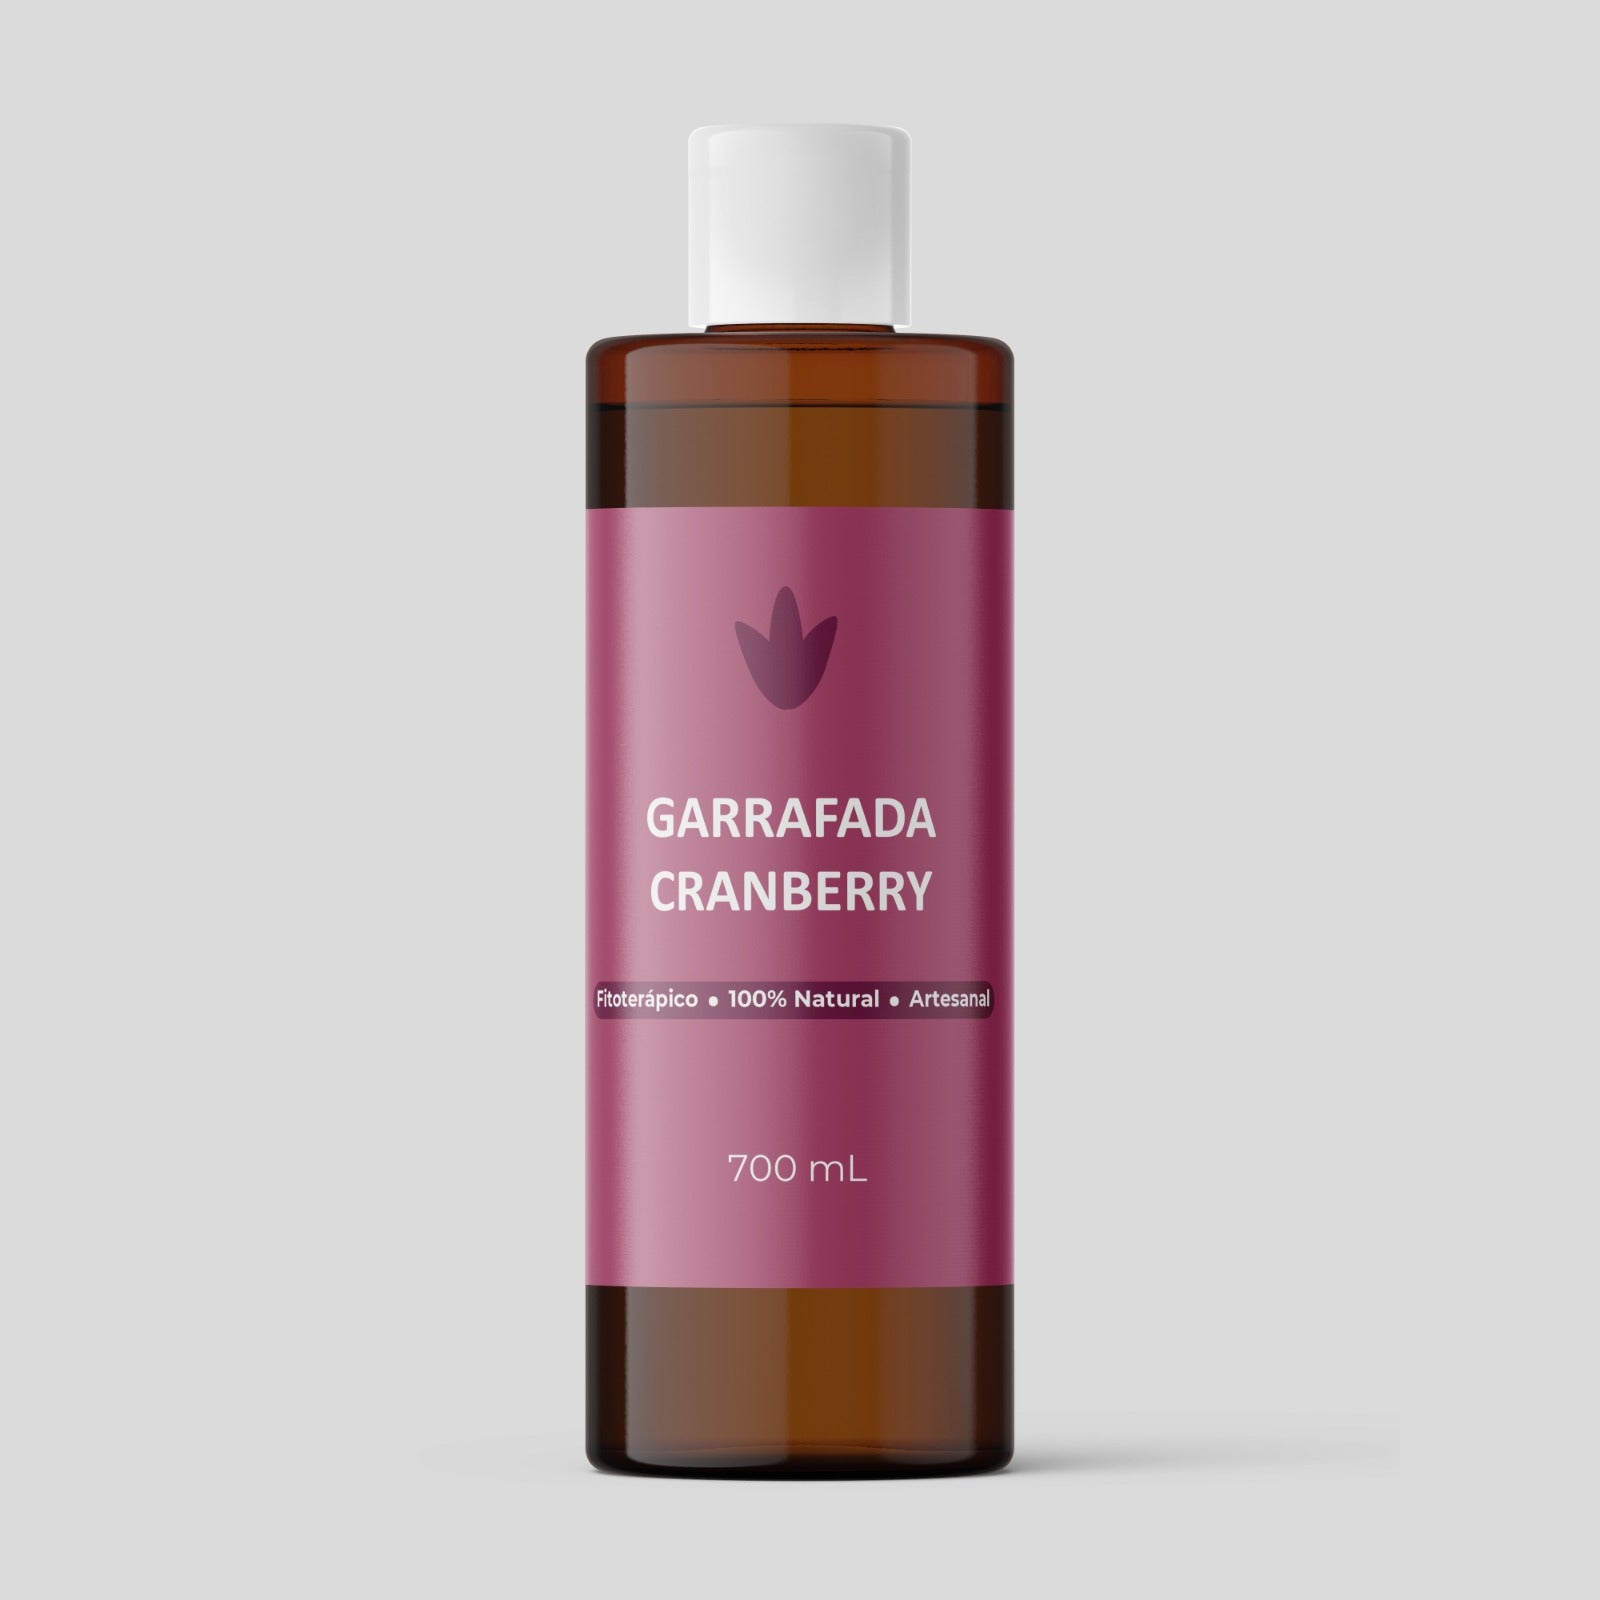 Garrafada Cranberry - Savana